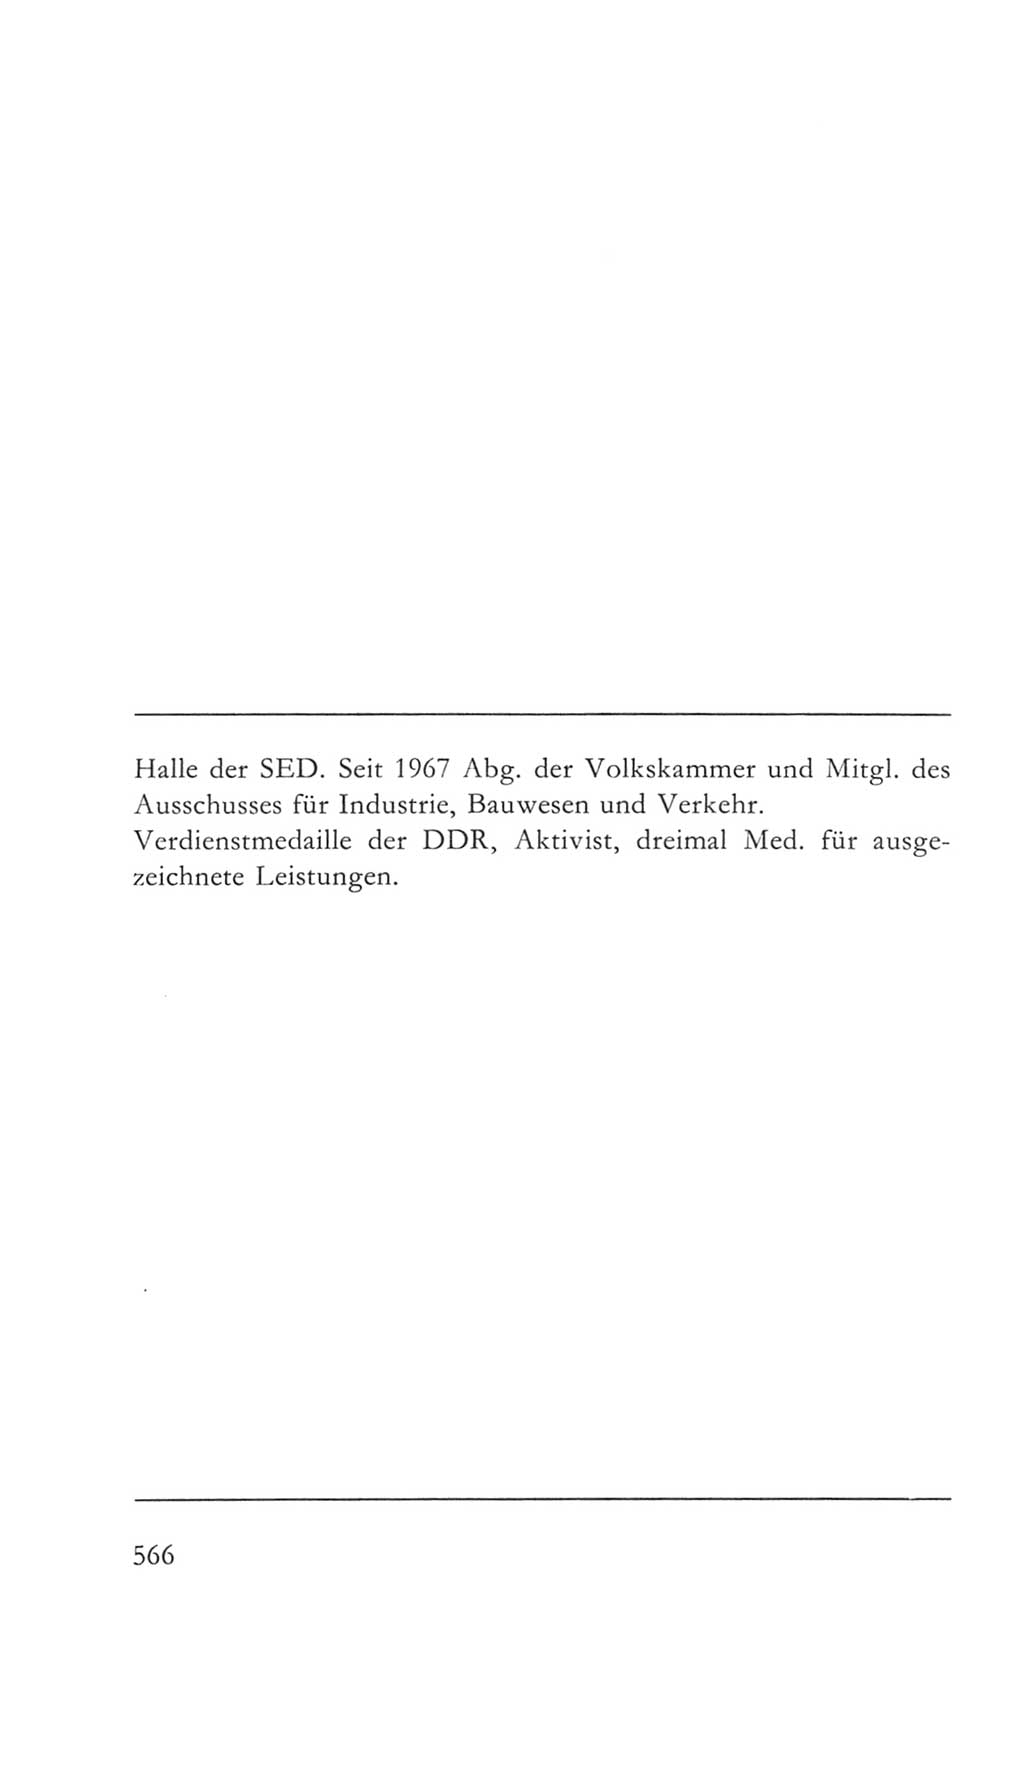 Volkskammer (VK) der Deutschen Demokratischen Republik (DDR) 5. Wahlperiode 1967-1971, Seite 566 (VK. DDR 5. WP. 1967-1971, S. 566)